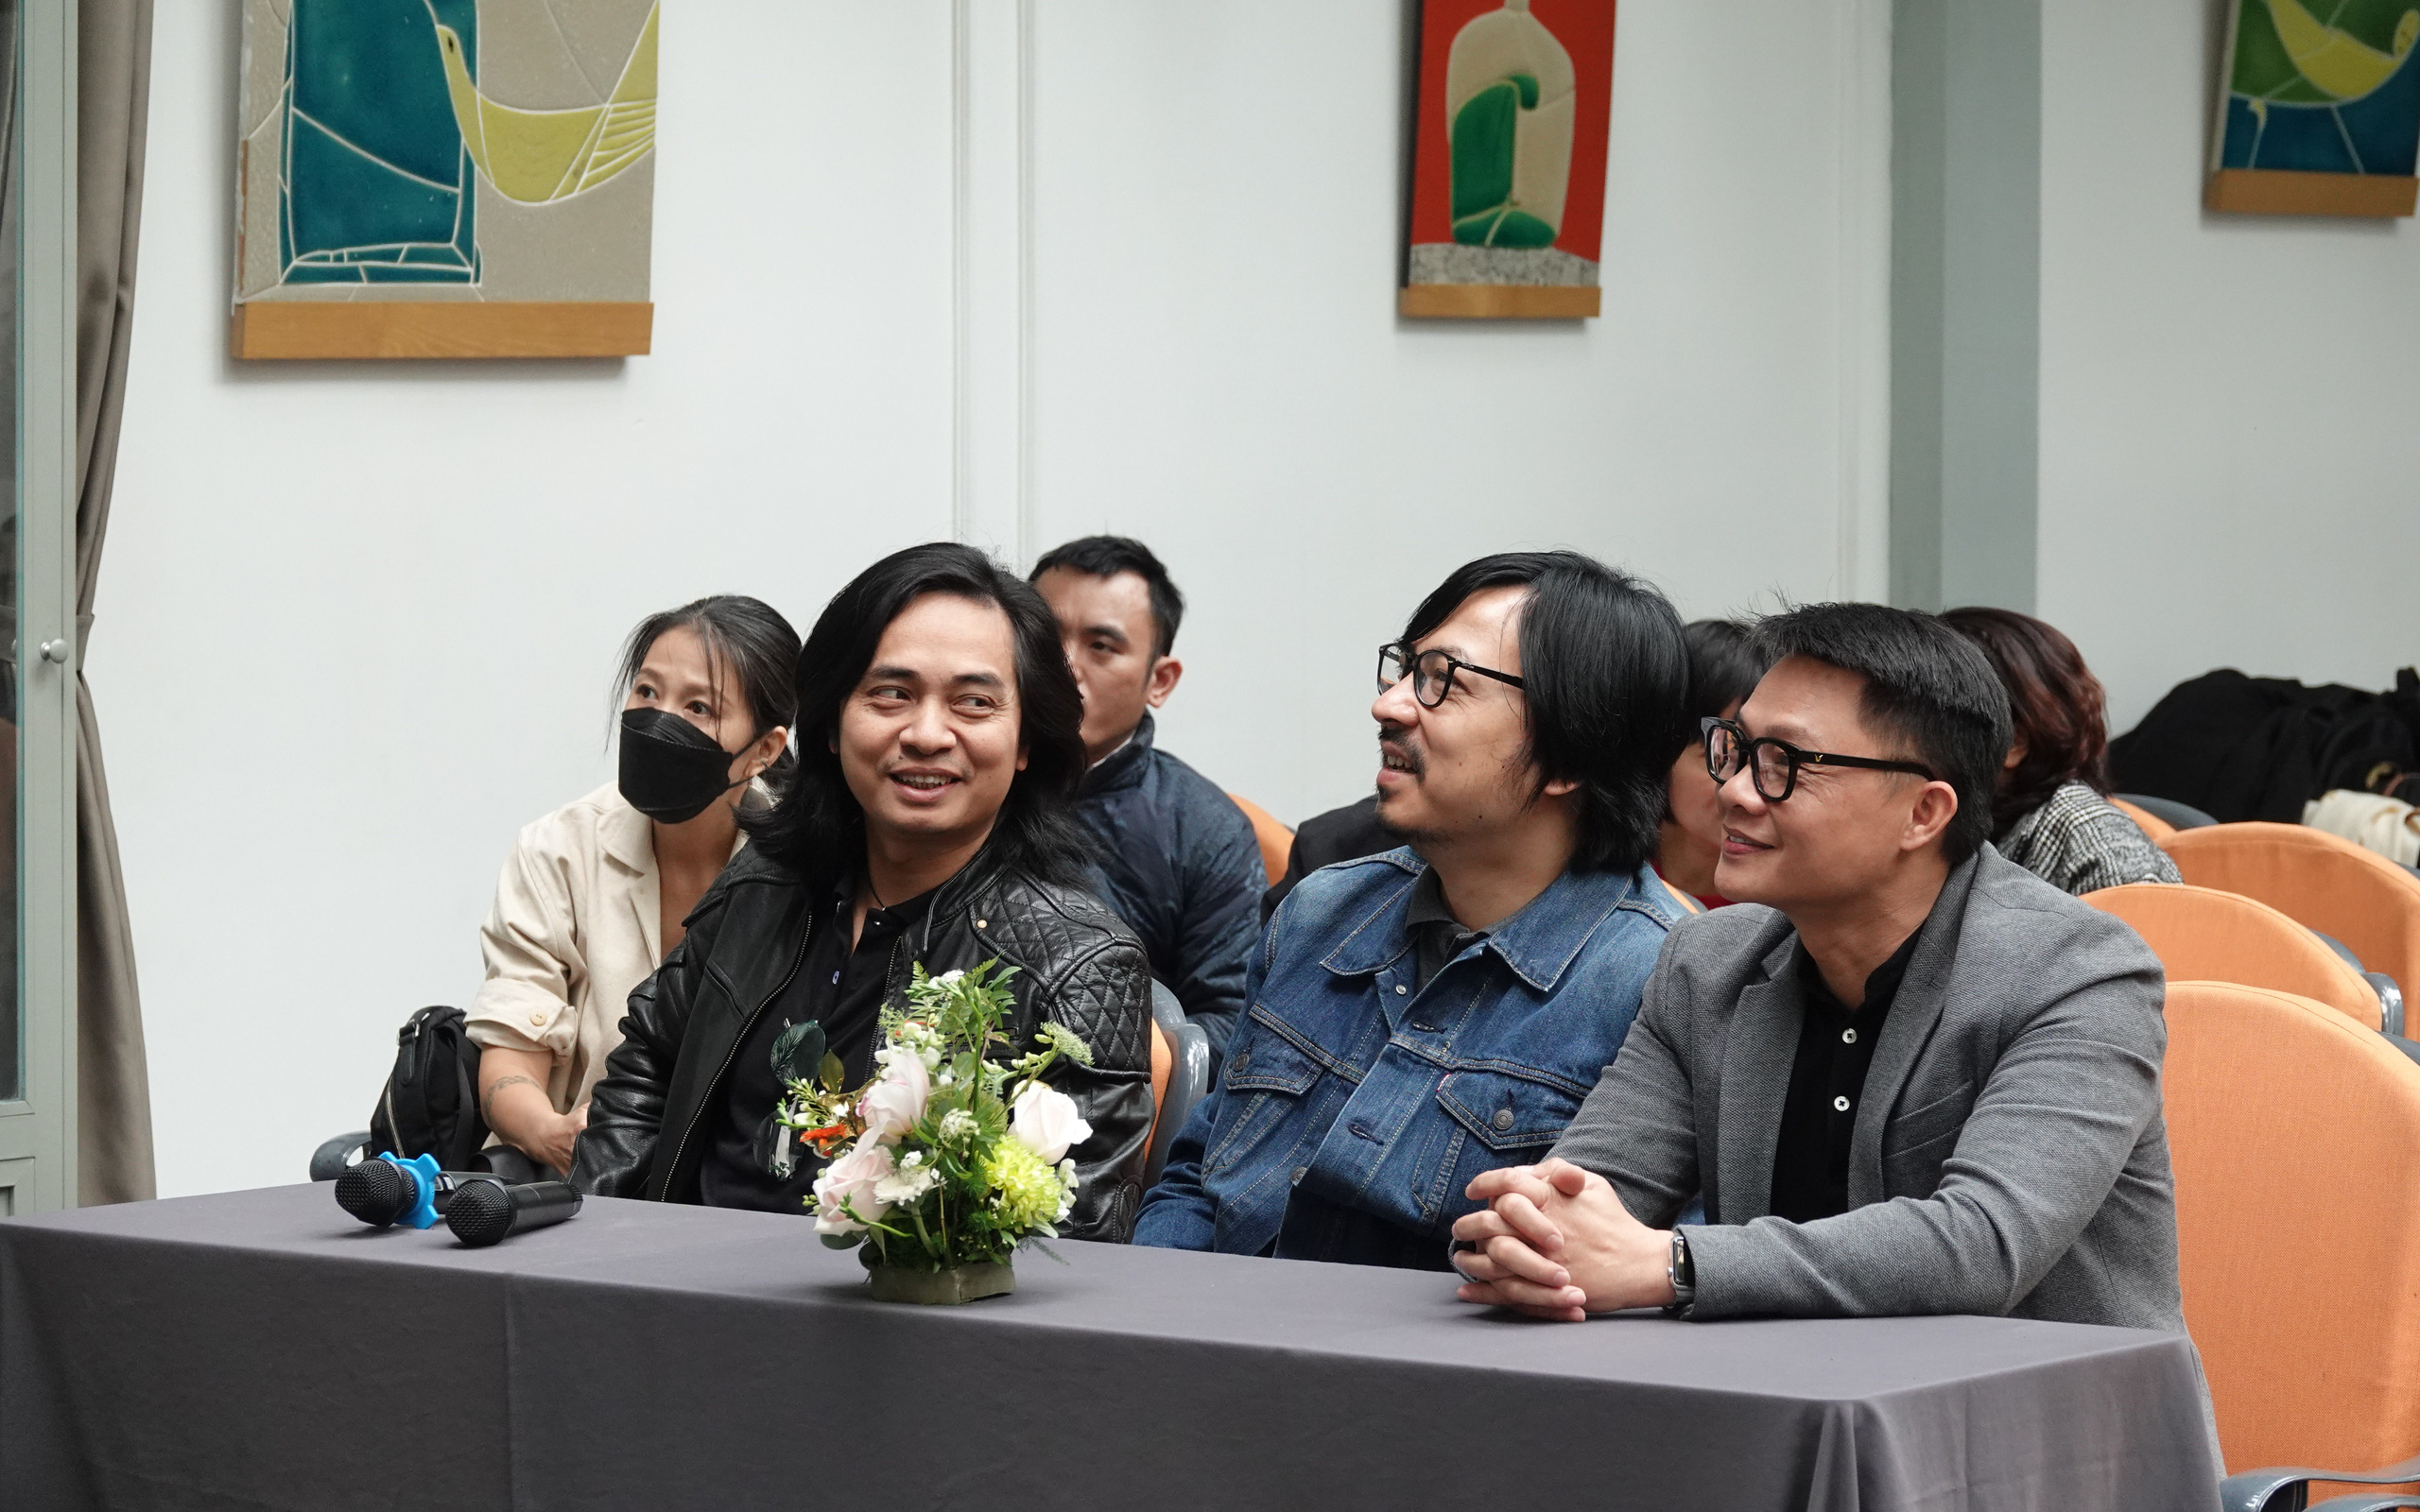 Ban nhạc Bức Tường cùng rocker Phạm Anh Khoa sẽ xuất hiện trong chương trình tôn vinh cố nghệ sĩ Trần Lập 